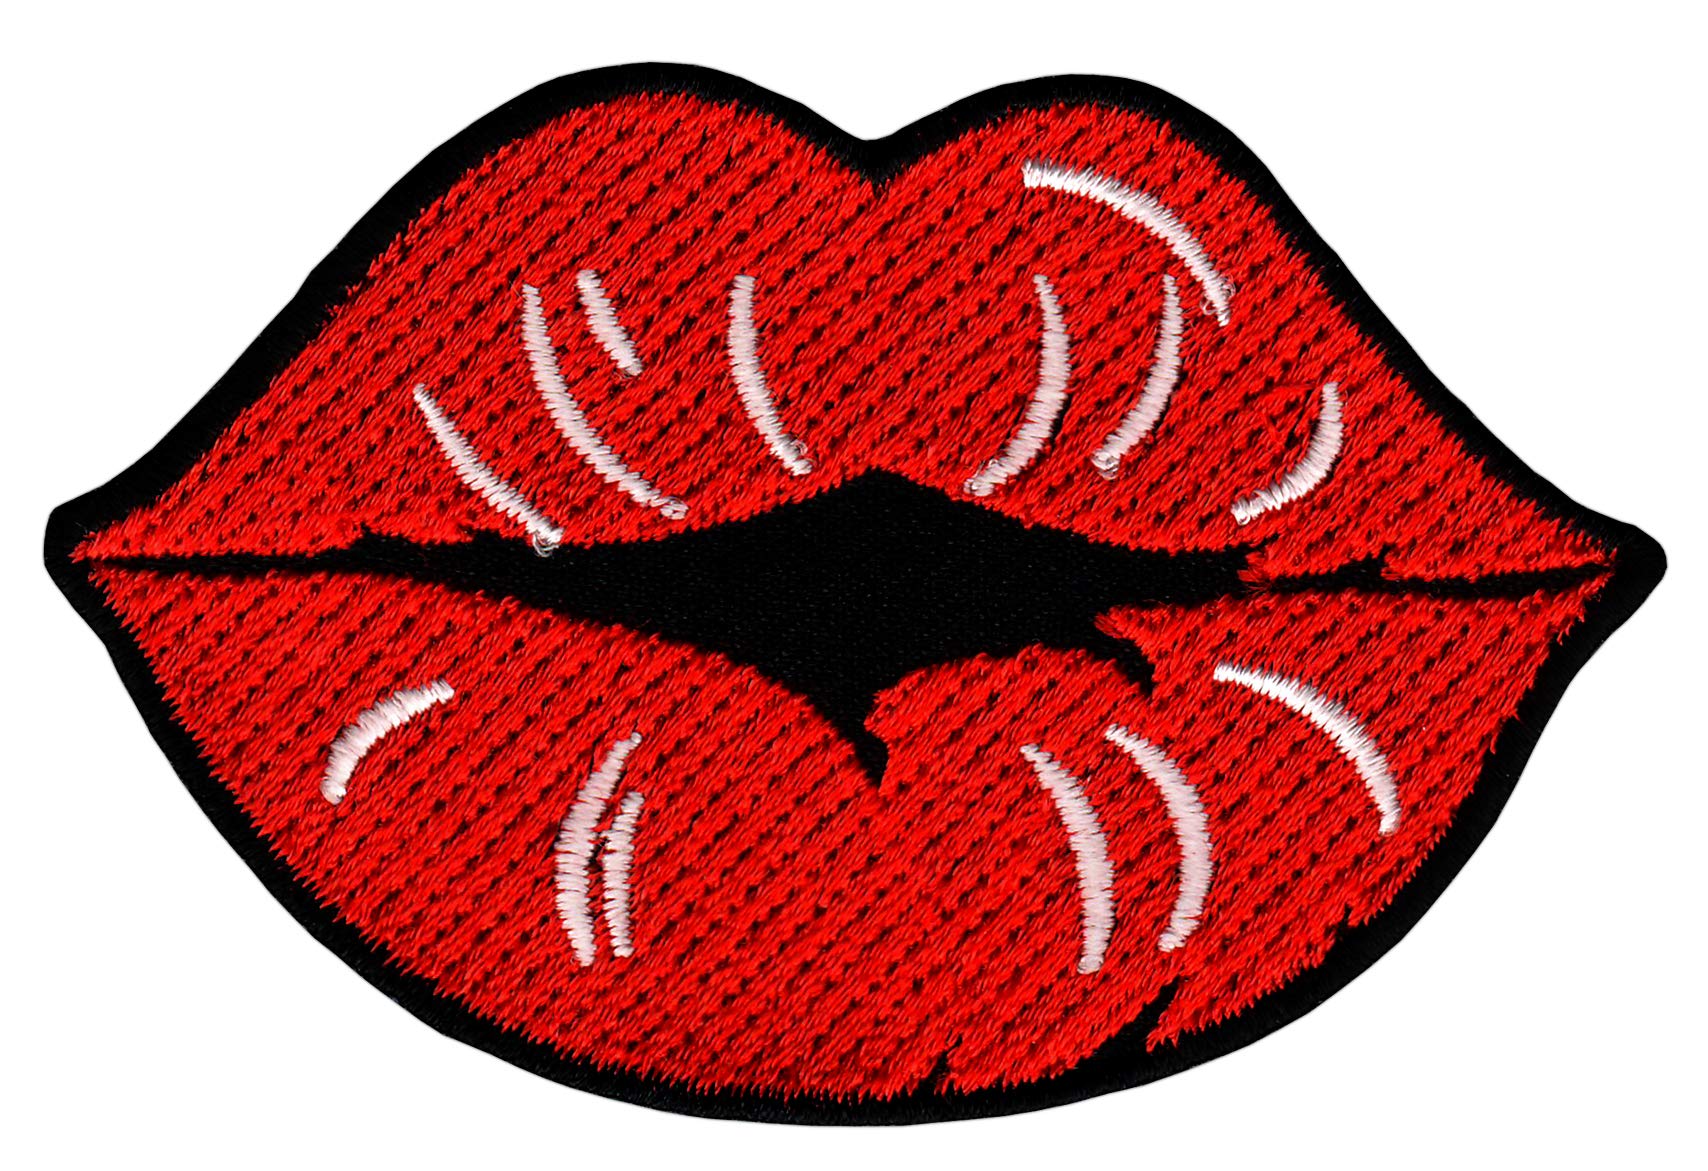 Kussmund Mund Rot Kuss Lippen Gestickter Aufnäher Bügelbild Patch Größe 8,2 x 5,4 cm von Bestellmich / Aufnäher